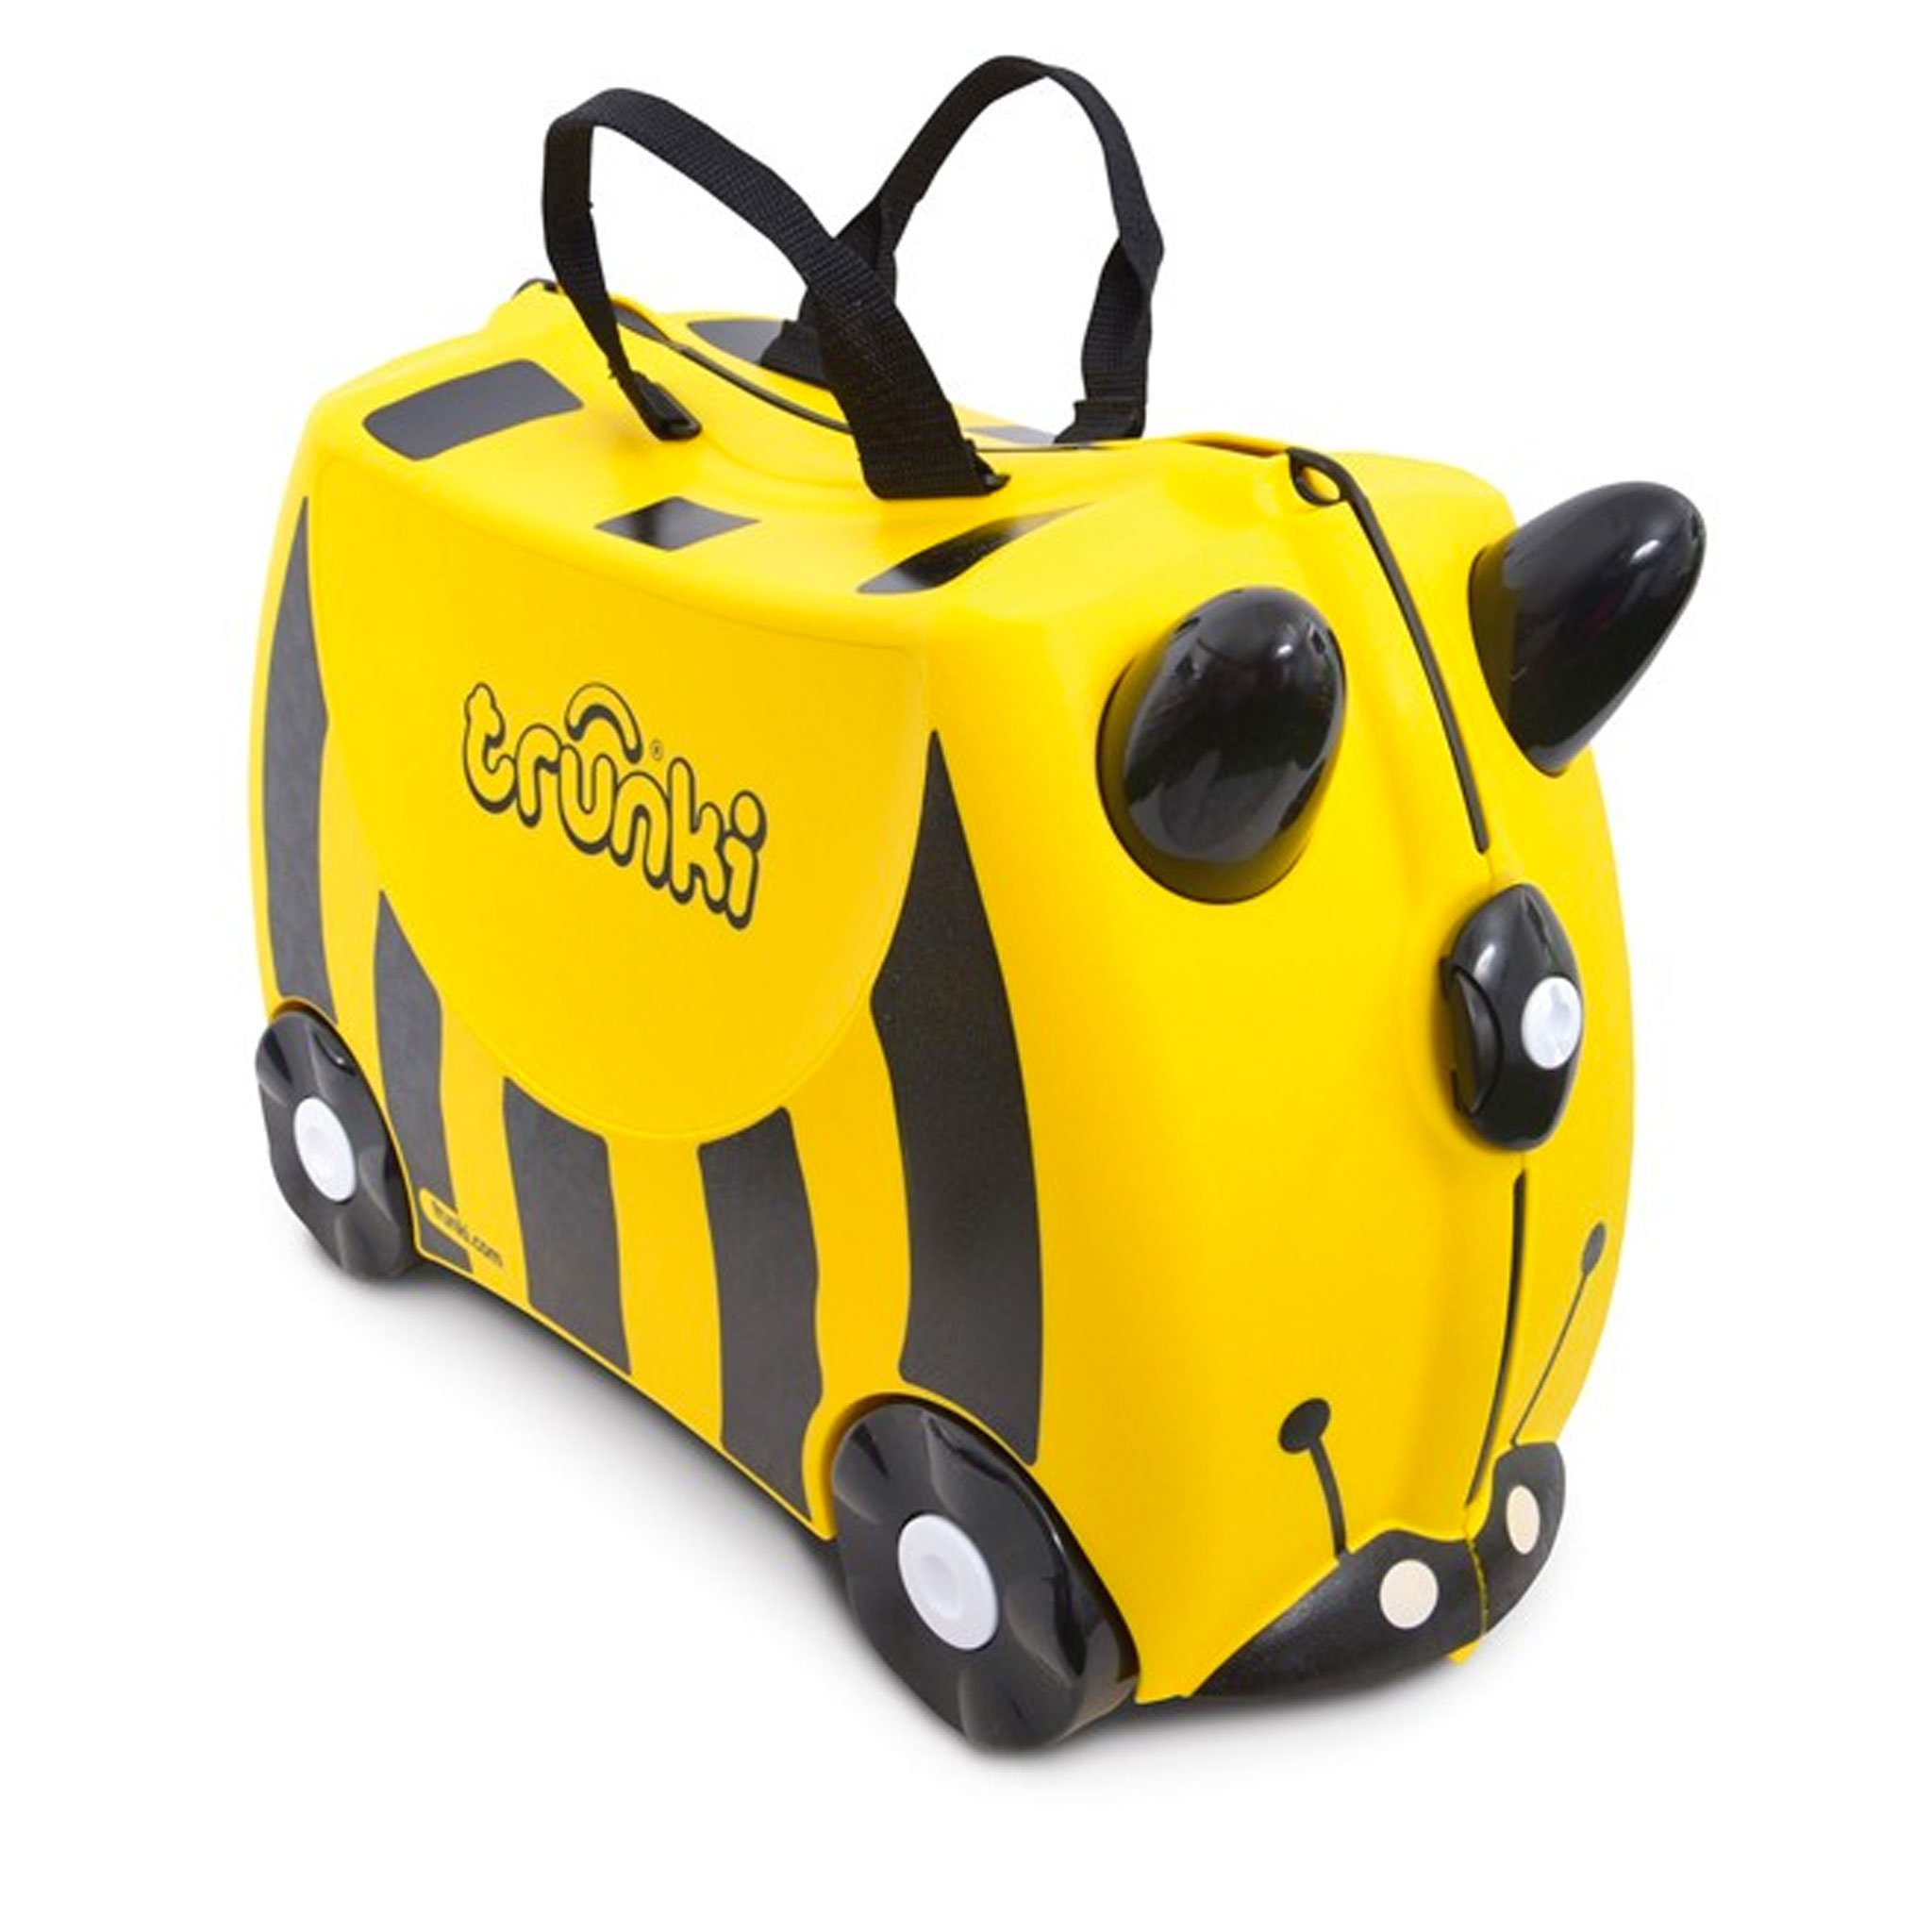 TR0044-GB-trunki-valigetta-cavalcabile-traino-bambini-viaggiare-colorata.jpg